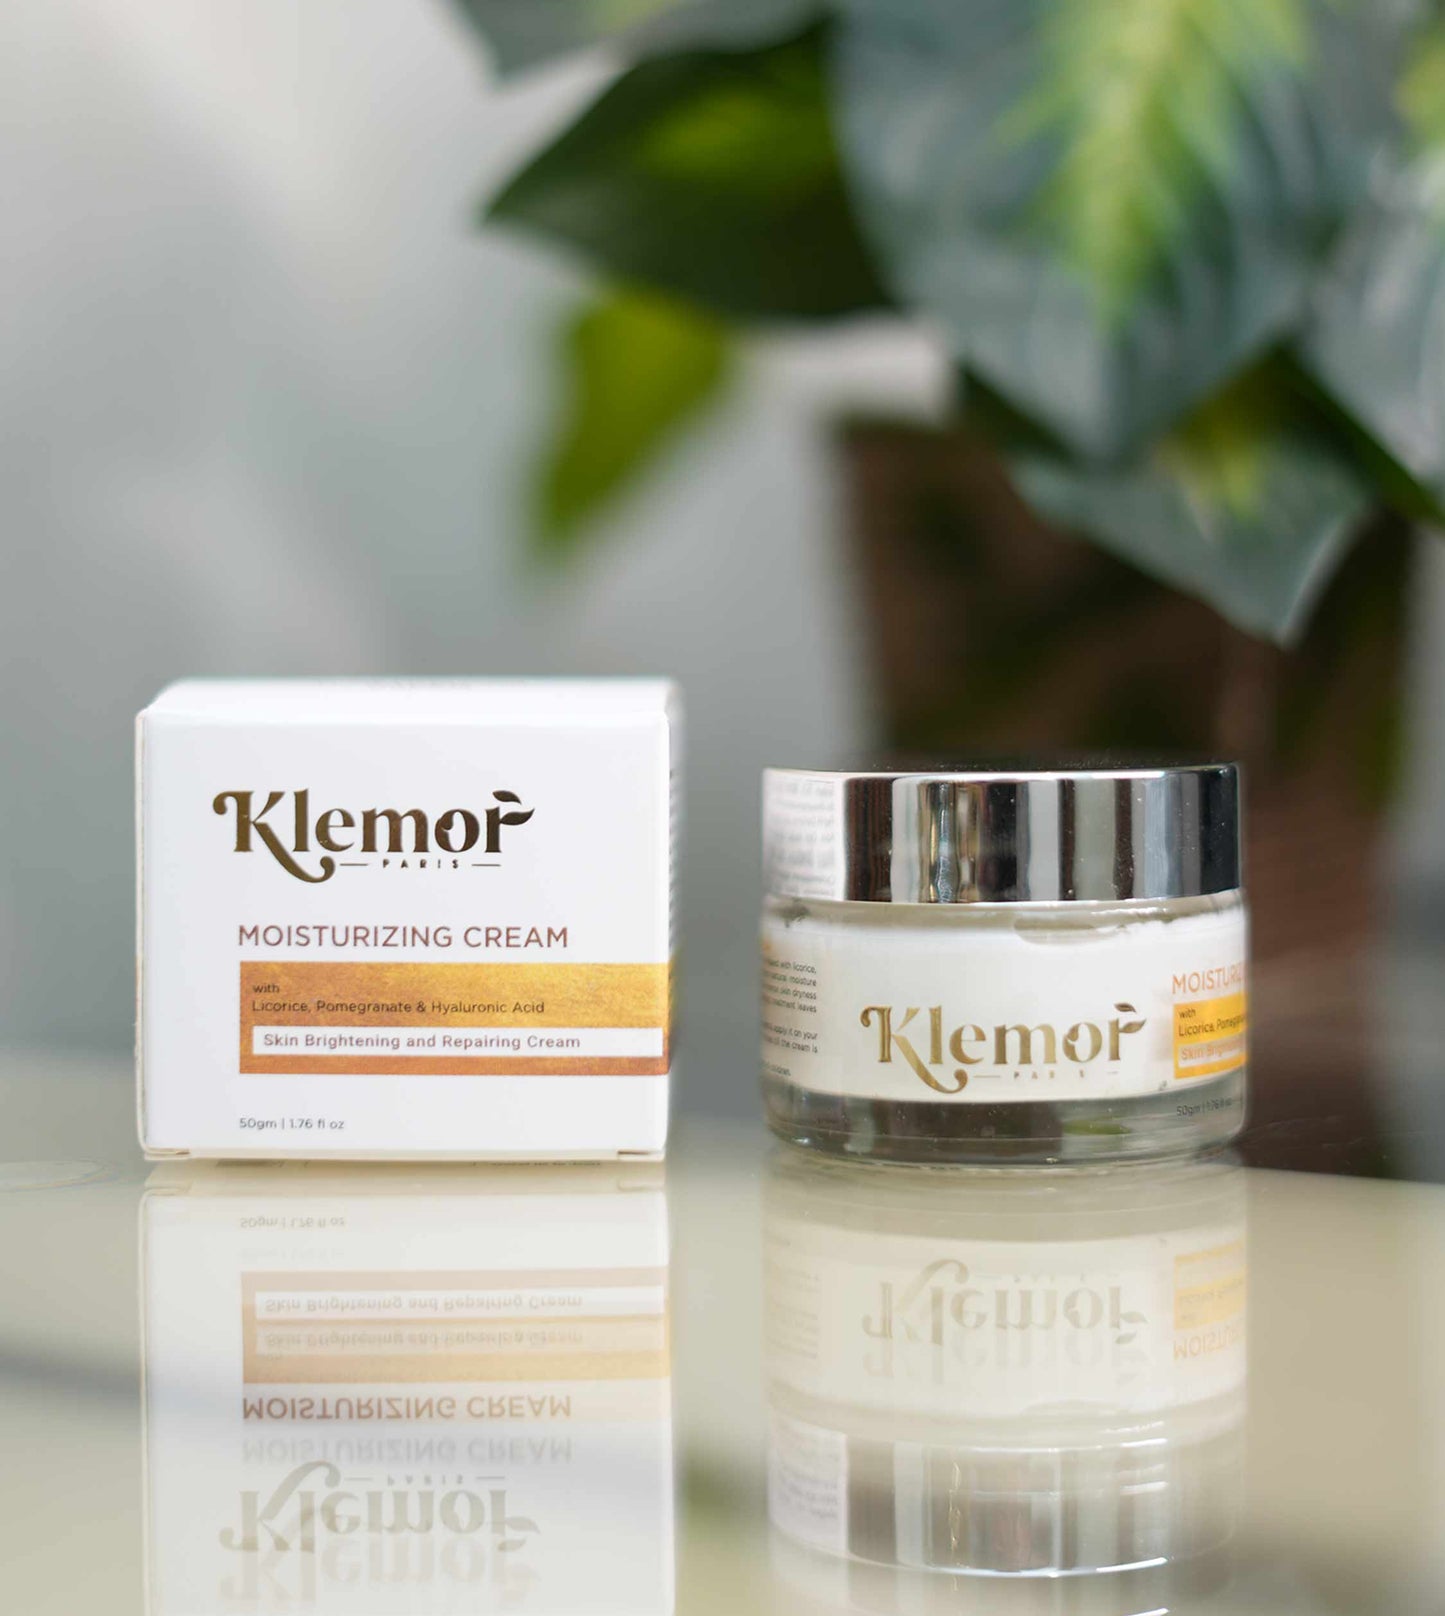 Klemor Luminous Moisturizing Cream with Aloe Extract For Dry & Sensitive Skin (Men & Women)